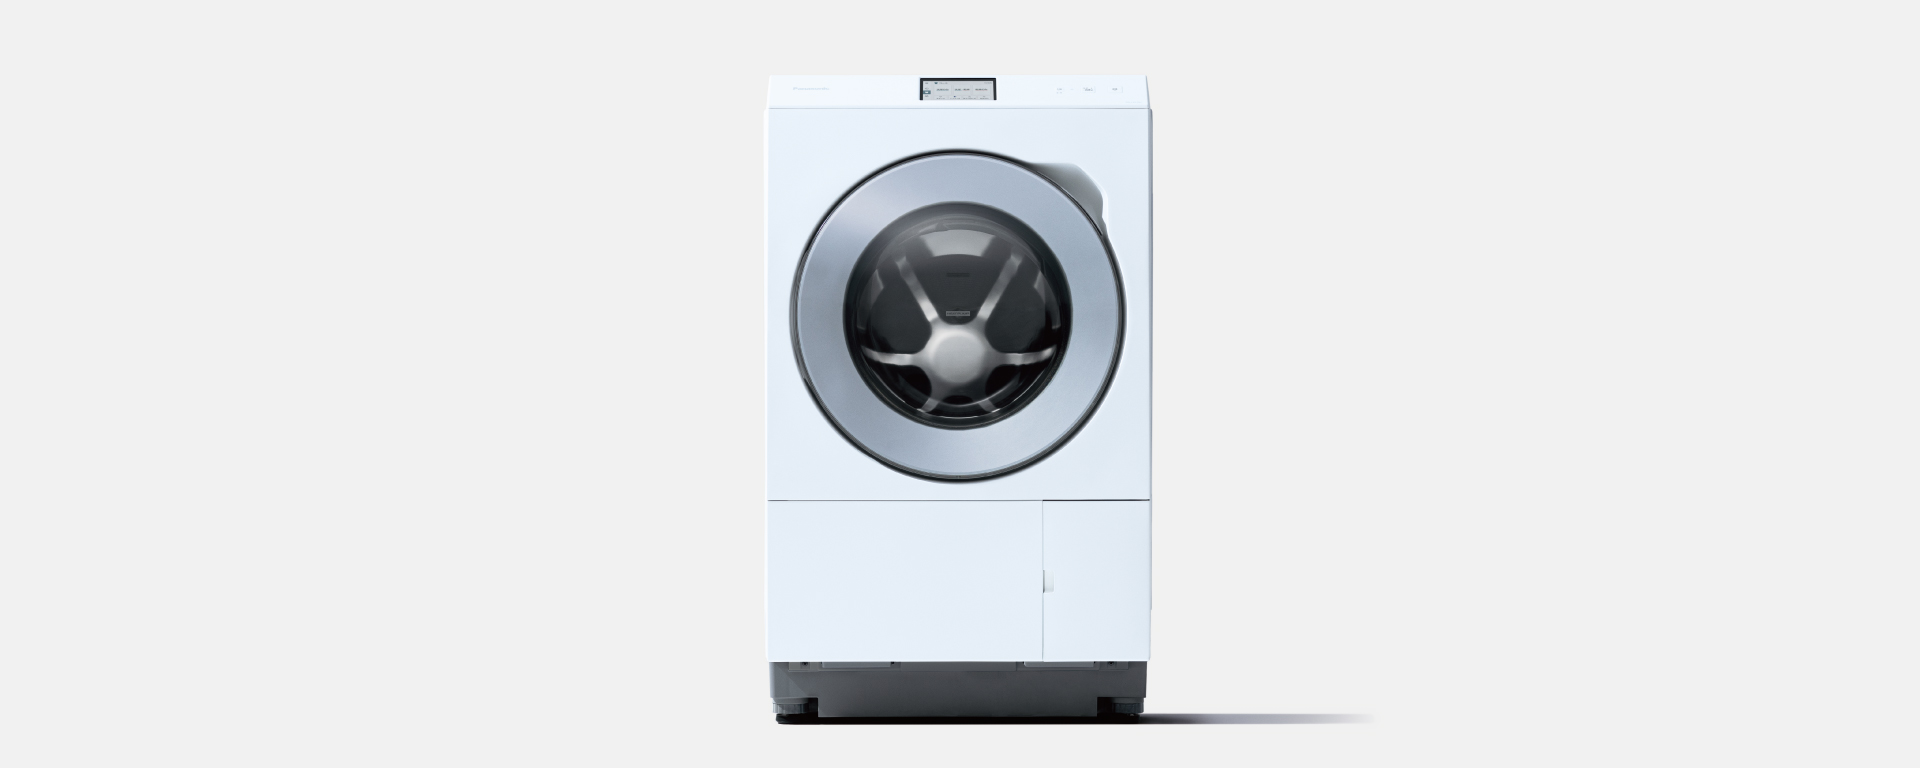 概要 ななめドラム洗濯乾燥機 NA-LX129CL/R | 洗濯機・衣類乾燥機 